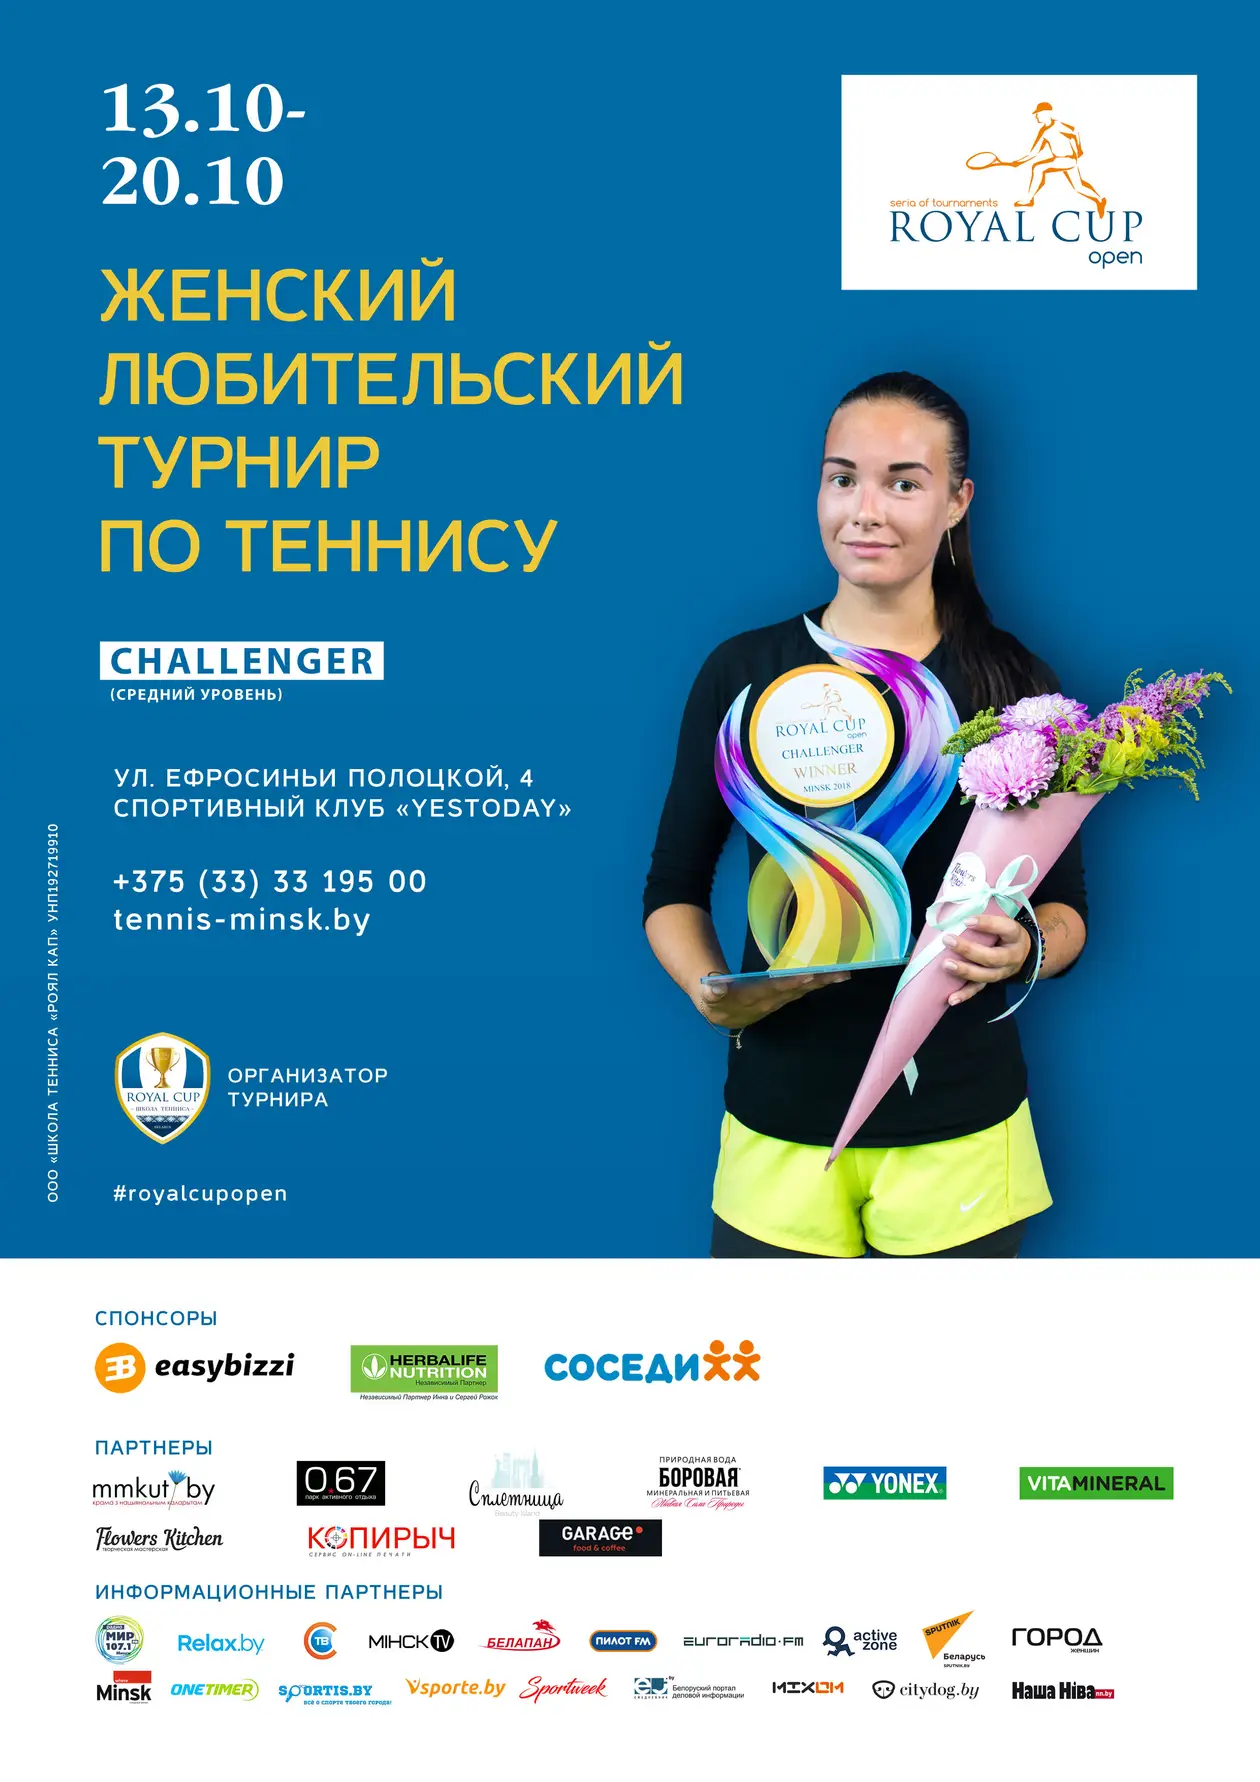 13-20 октября в Минске пройдёт женский турнир по теннису Royal Cup Open категории CHALLENGER